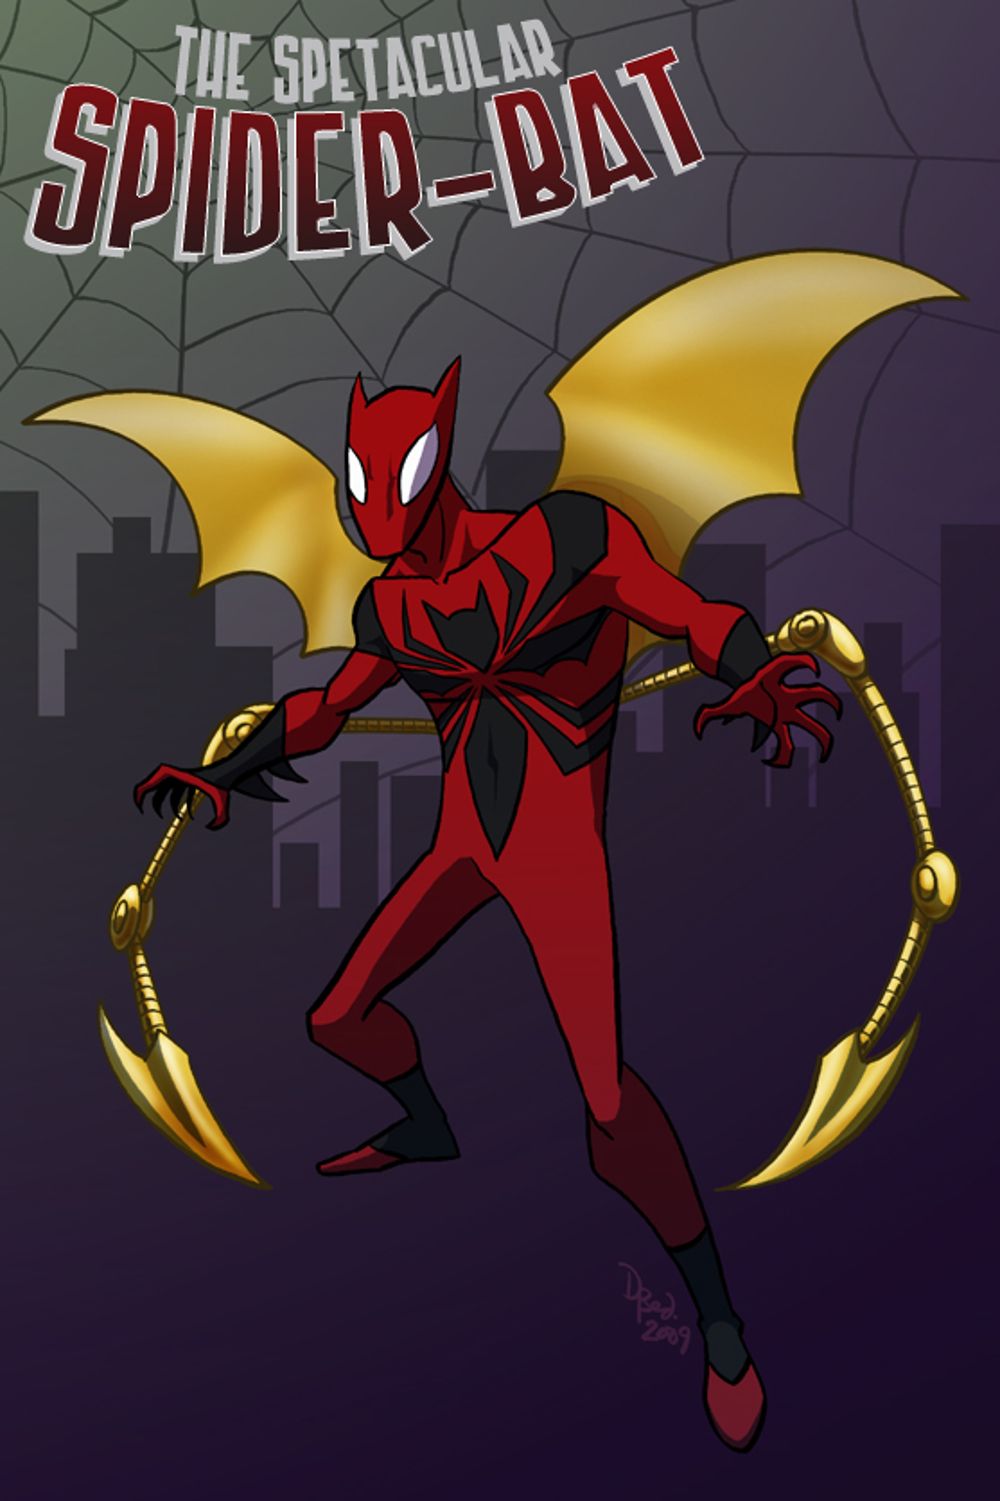 The Spectacular Spider-Bat